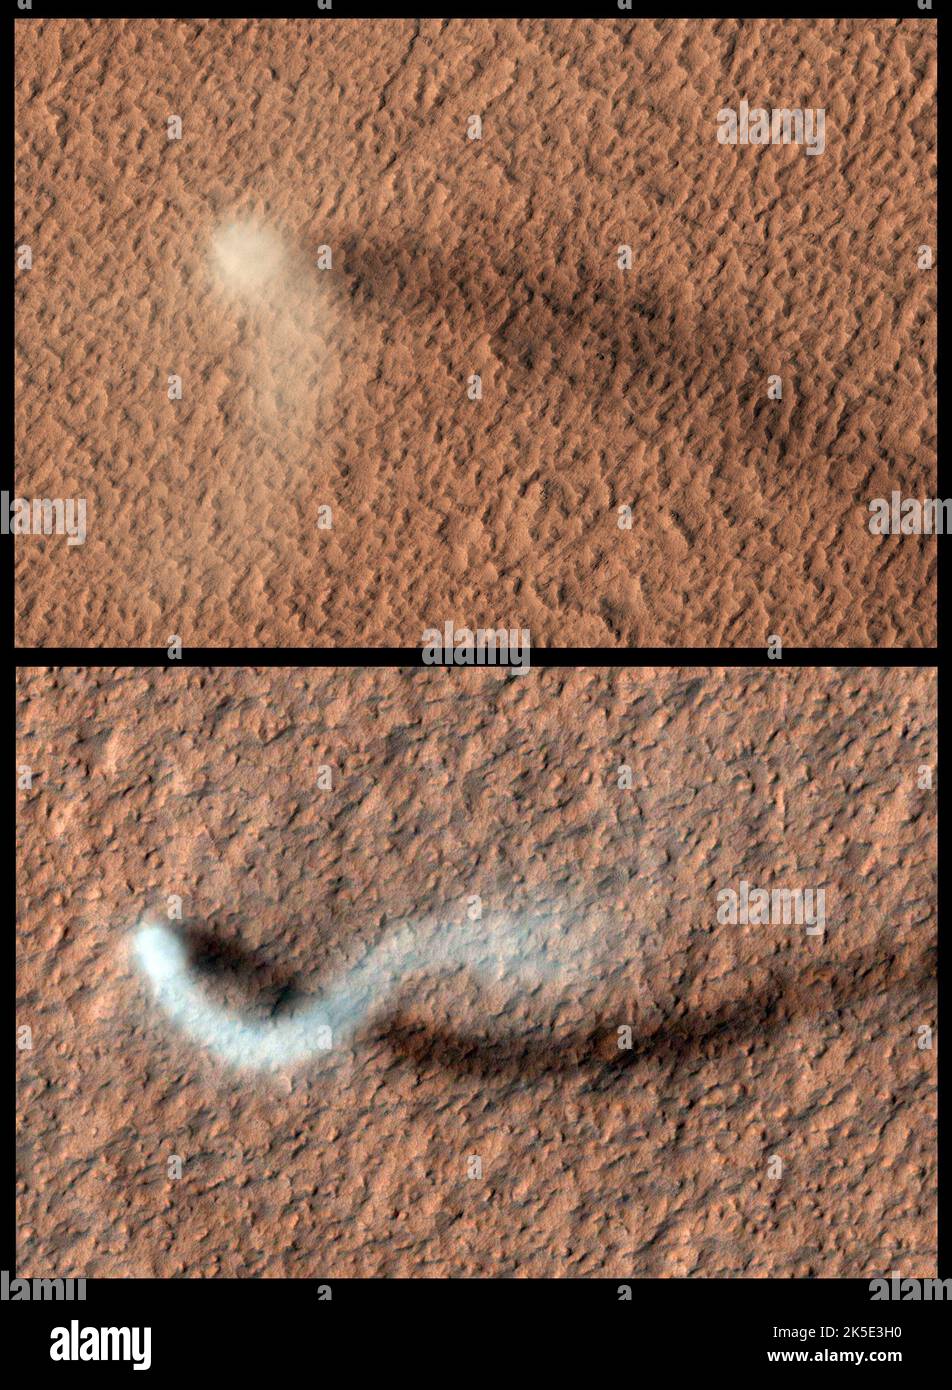 Staub teubelt auf dem Mars. Staubteufel sind rotierende Staubsäulen, die sich um Niederdruck-Lufteinschlüsse bilden und sowohl auf der Erde als auch auf dem Mars verbreitet sind. Diese Staubteufel bildeten sich auf den staubbedeckten, vulkanischen Ebenen von Amazonis Planitia. Der Staubteufel (oben) hat einen Kern von etwa 50m. Die Länge des Schattens deutet auf die Wolke von steigt etwa 650m in die Atmosphäre. Der (untere Bild) Staubteufel hat eine serpentinische Form und sein Schatten zeigt an, dass die Staubwolke mehr als 800m oder eine halbe Meile in der Höhe erreicht. Eine optimierte und verbesserte Version von NASA-Bildern. Quelle: NASA/JPL/UArizona Stockfoto